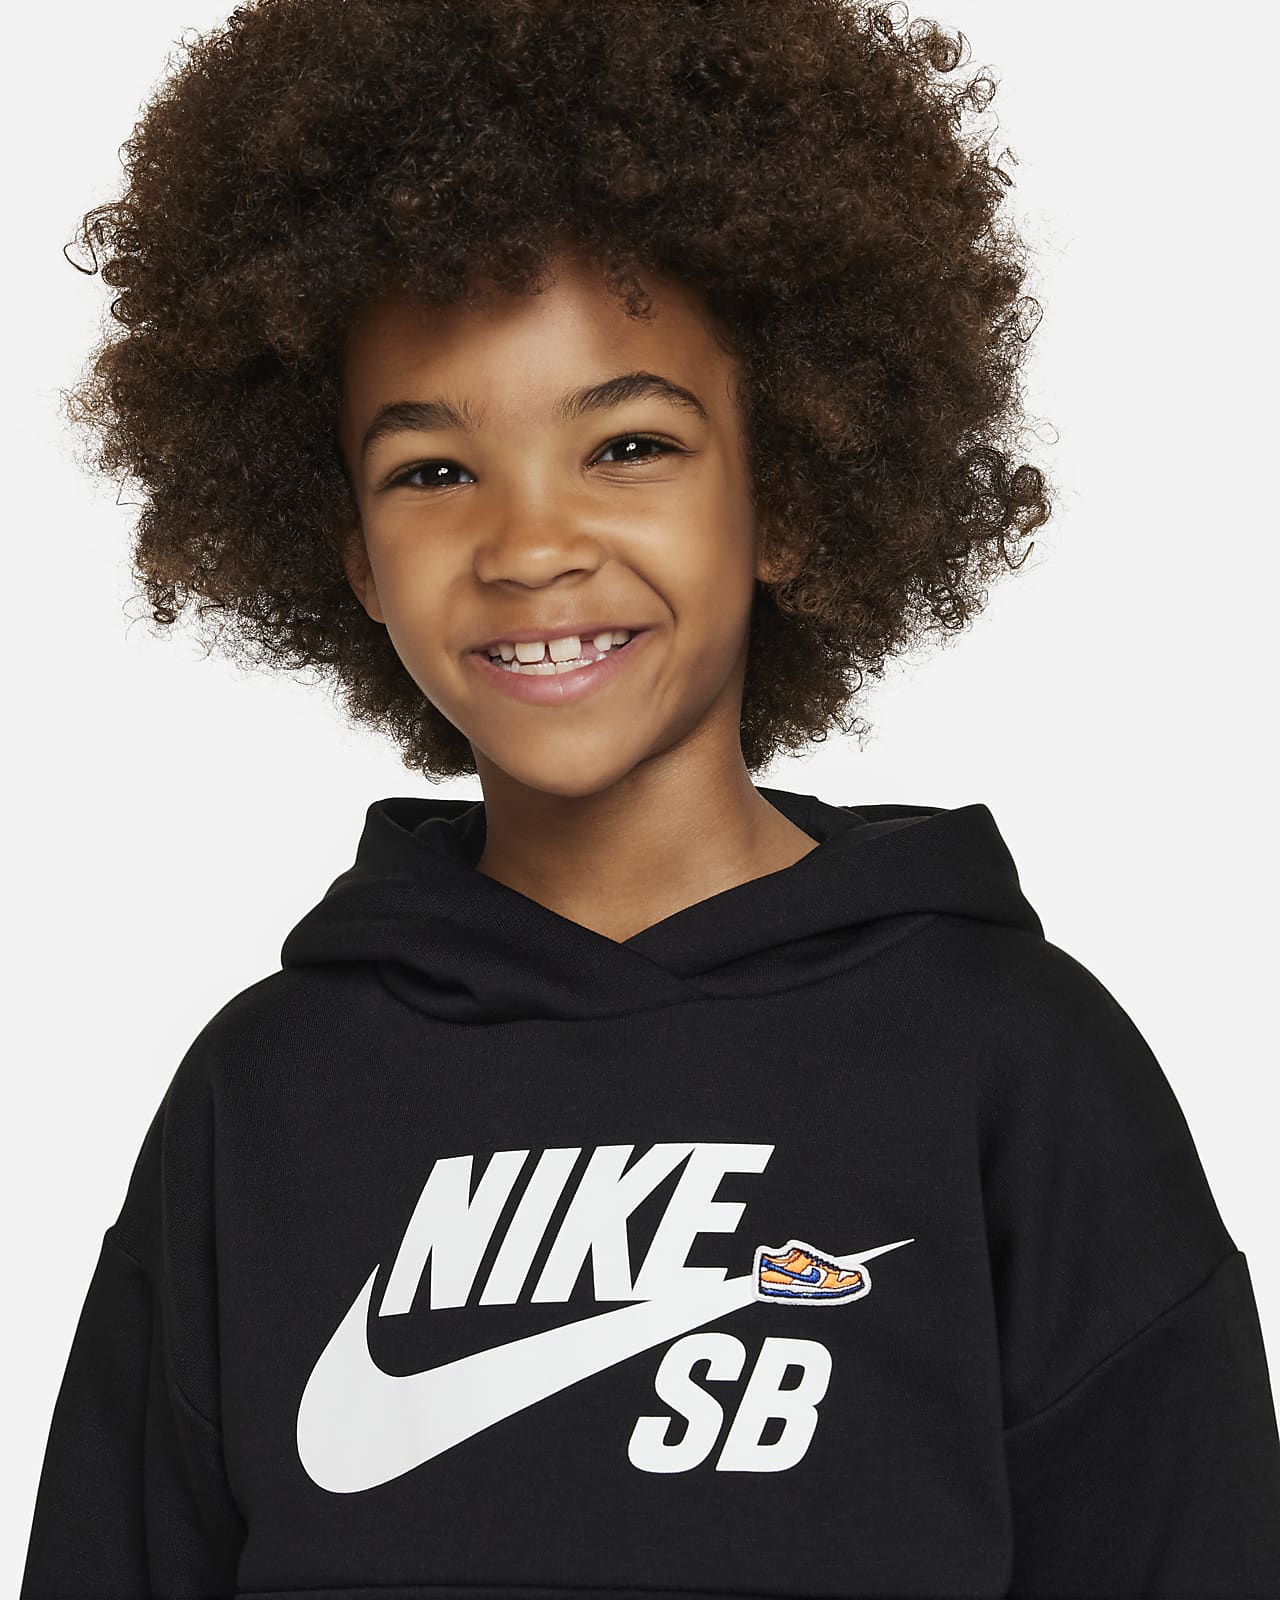 Tom Audreath níquel comedia Sudadera con gorro para niños talla pequeña Nike SB Icon Fleece Hoodie. Nike .com